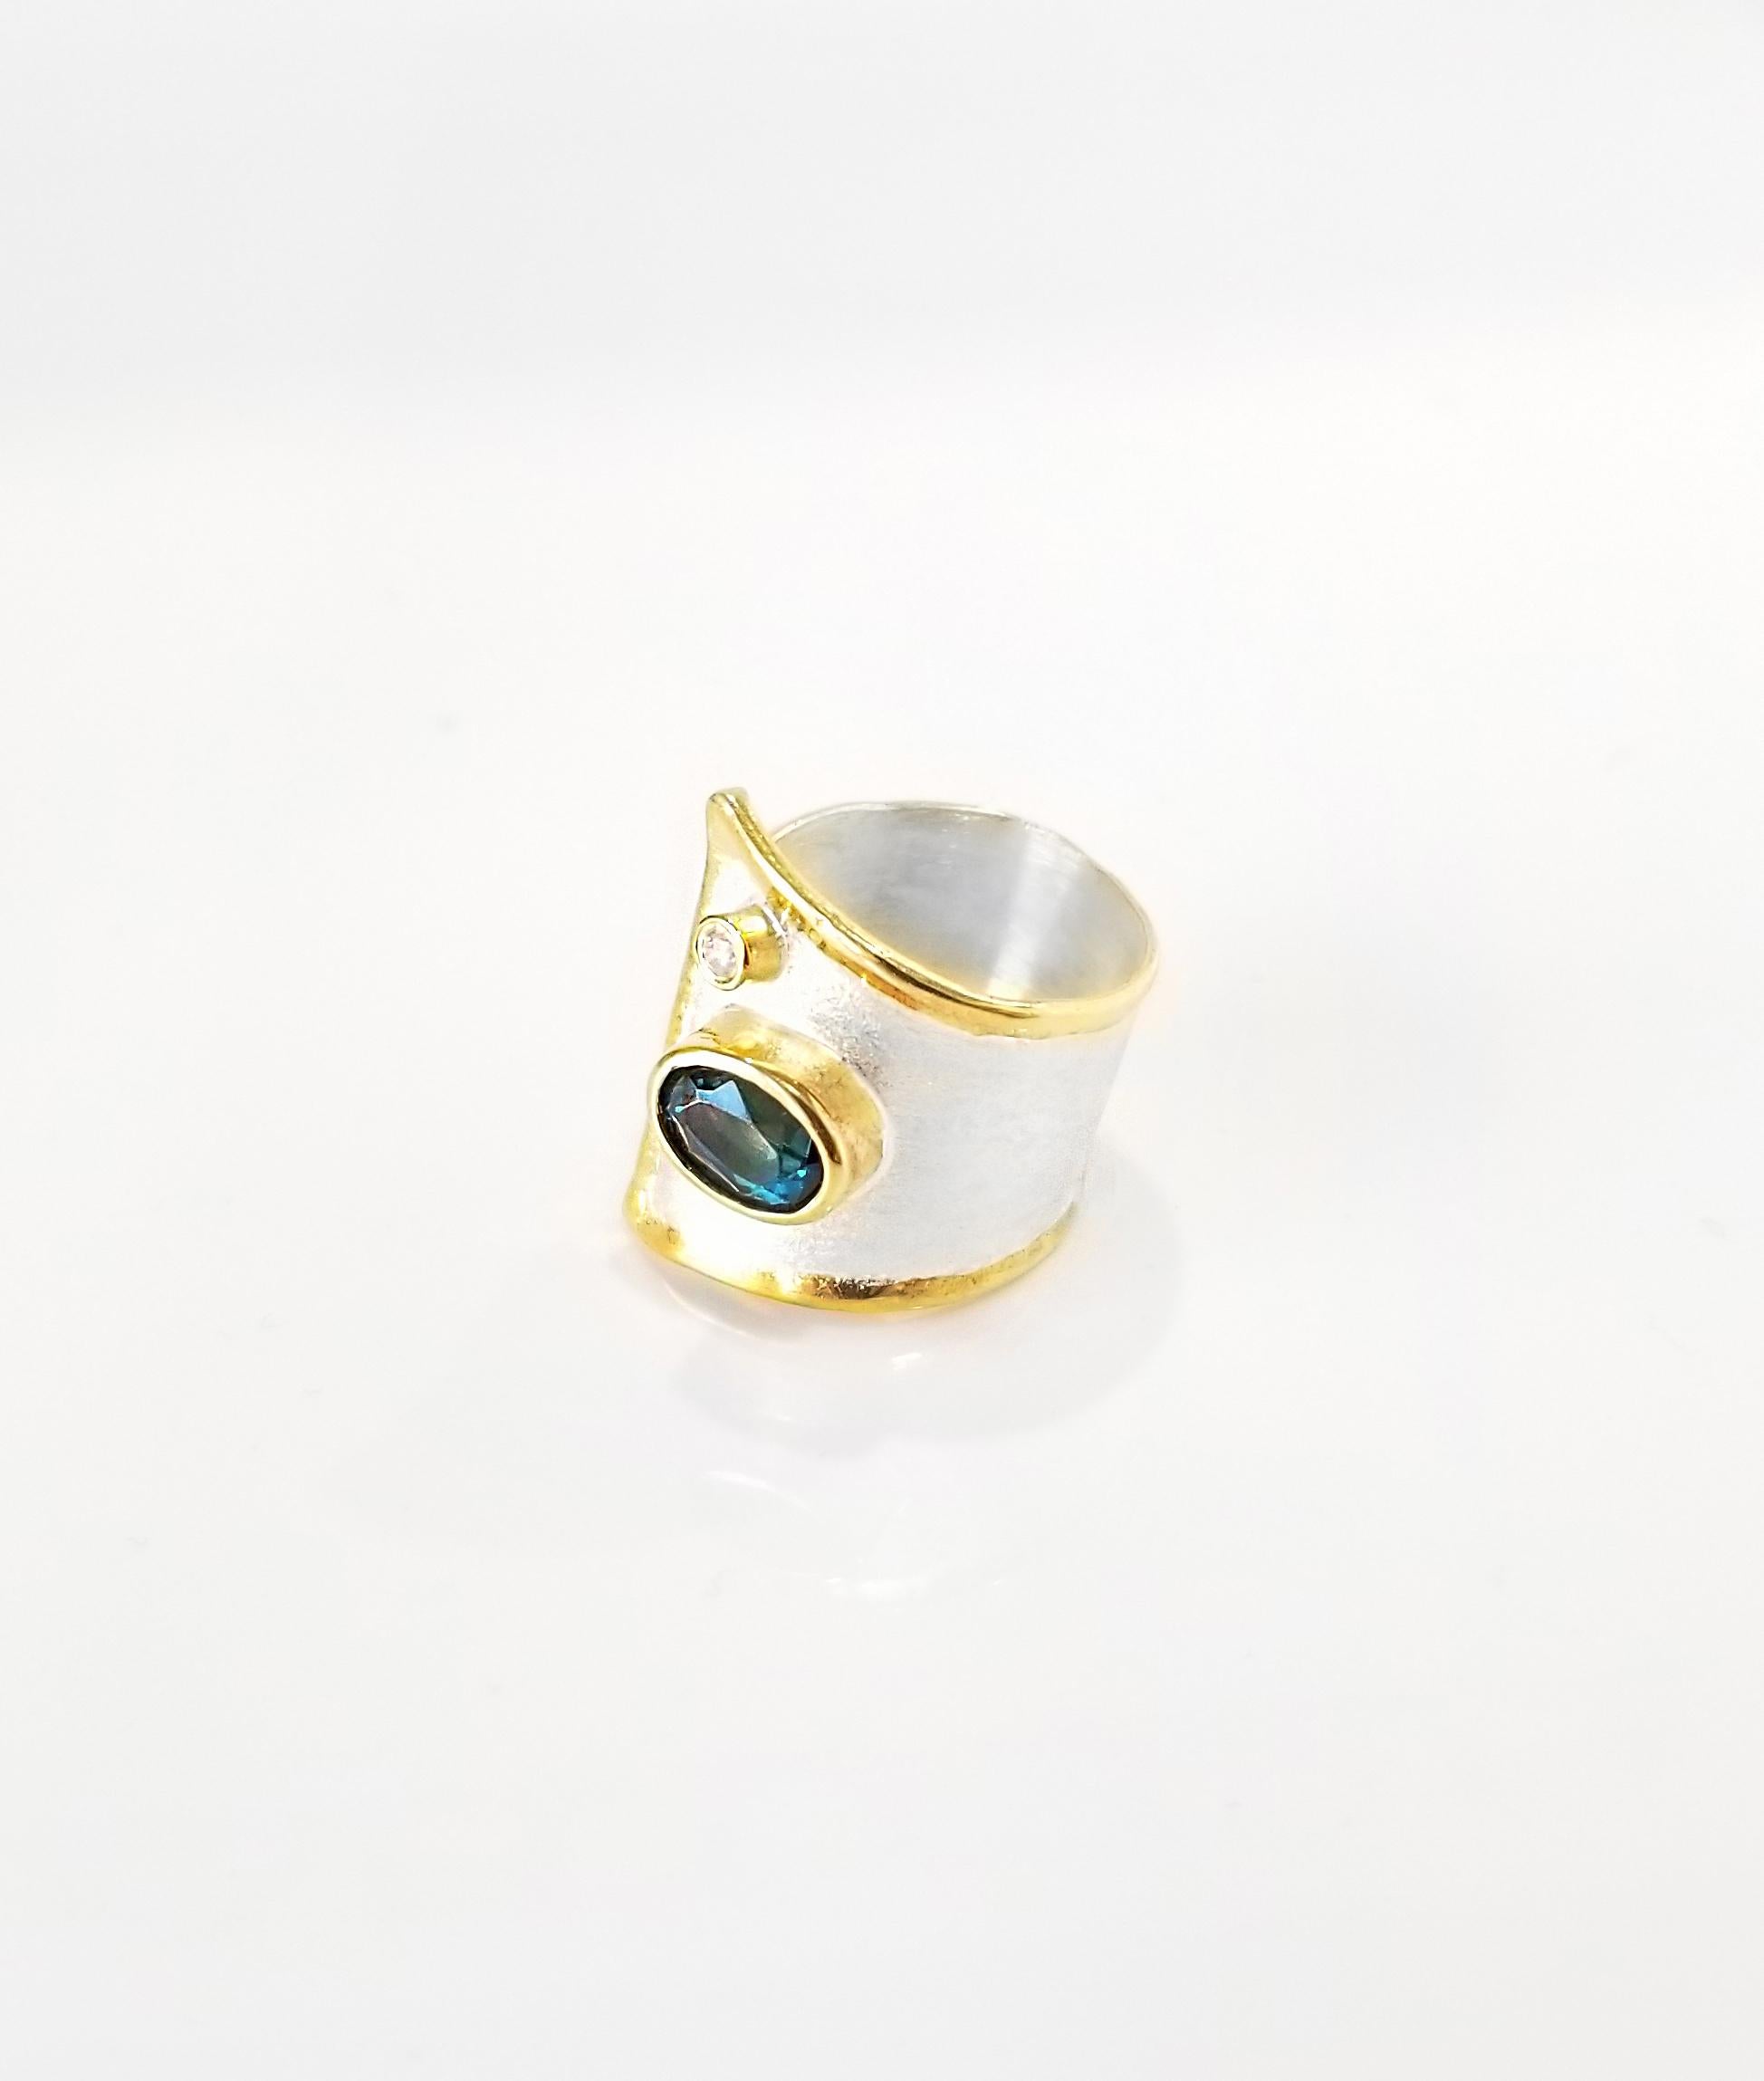 Yianni Creations Midas Collection 100% Handmade Artisan Gorgeous Ring aus Feinsilber mit einem Overlay von 24 Karat Gelbgold verfügt über 1,60 Karat London Blue Topaz begleitet von 0,03 Karat Diamant durch einzigartige Techniken der Handwerkskunst